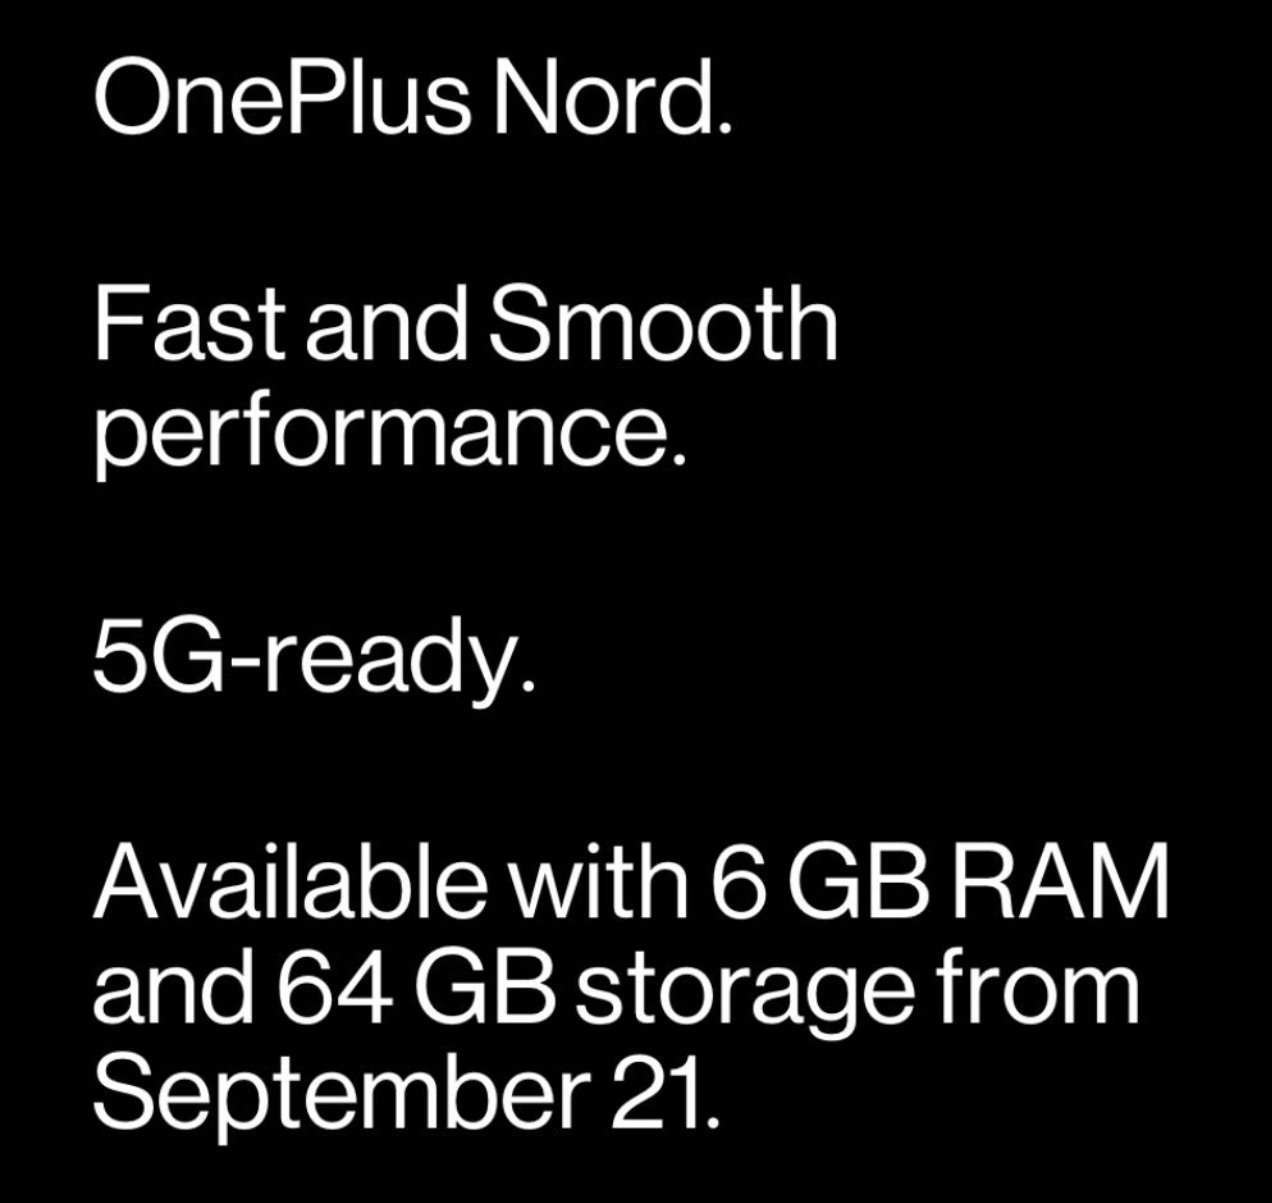 一加 Nord 6GB + 64GB版本将于9月21日在印度发售